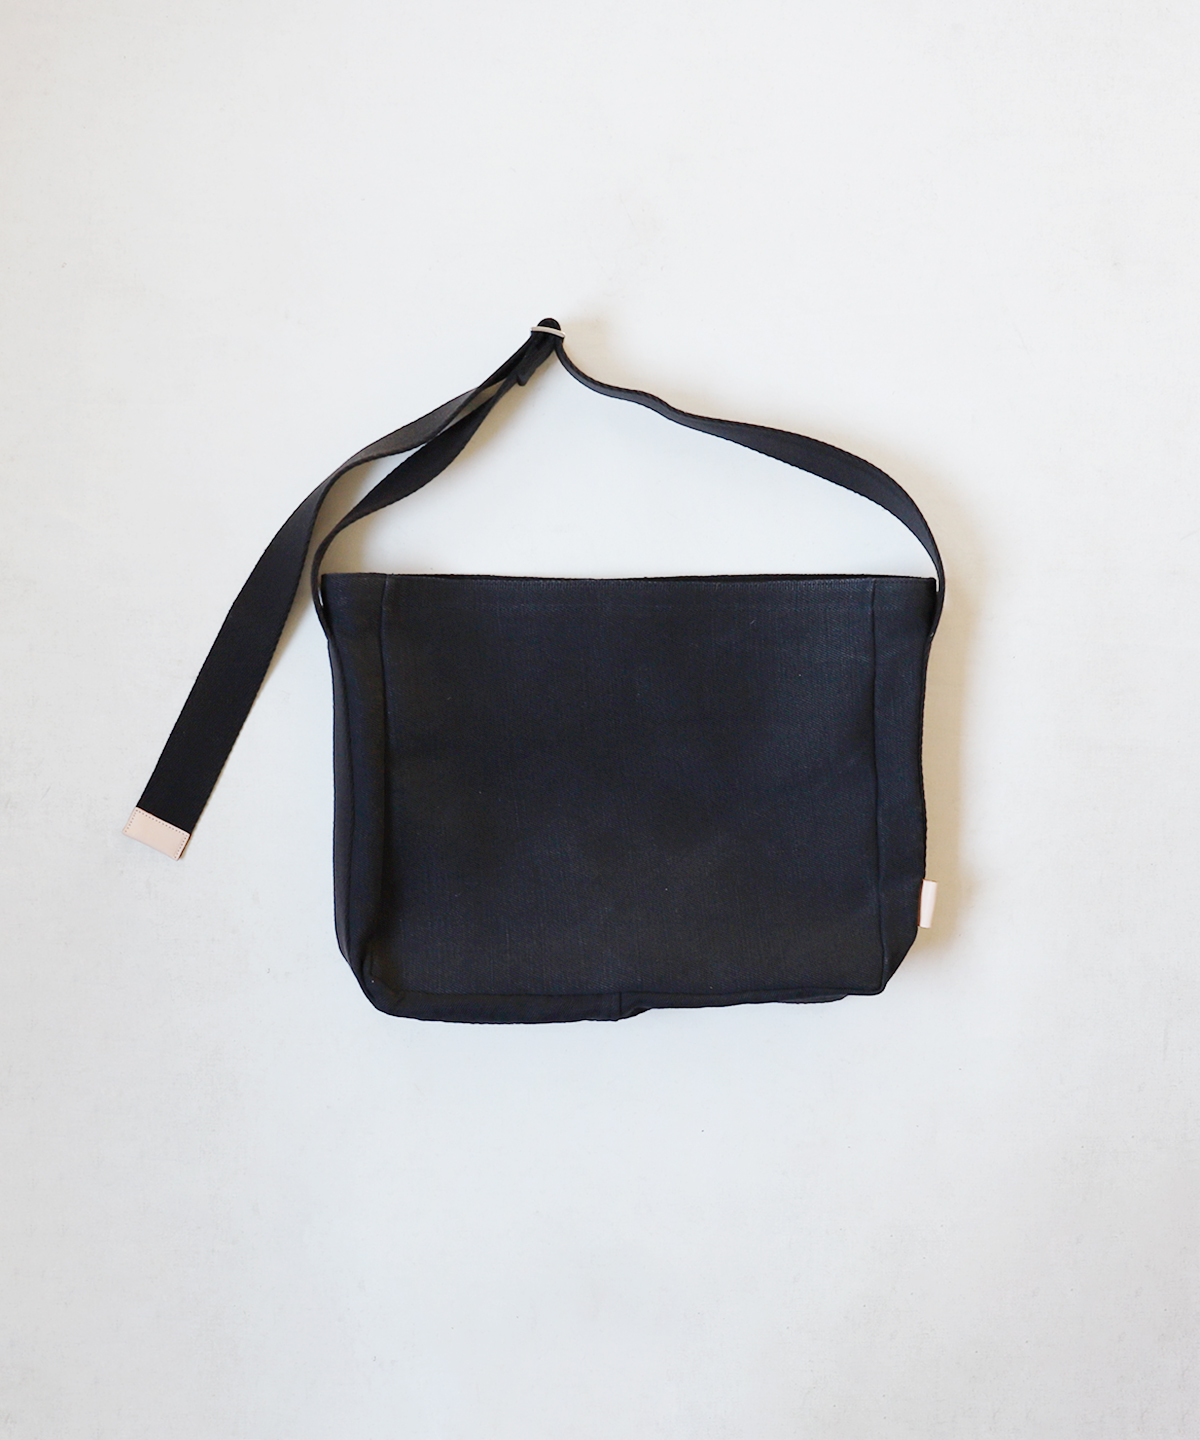 Hender scheme / square shoulder bag small